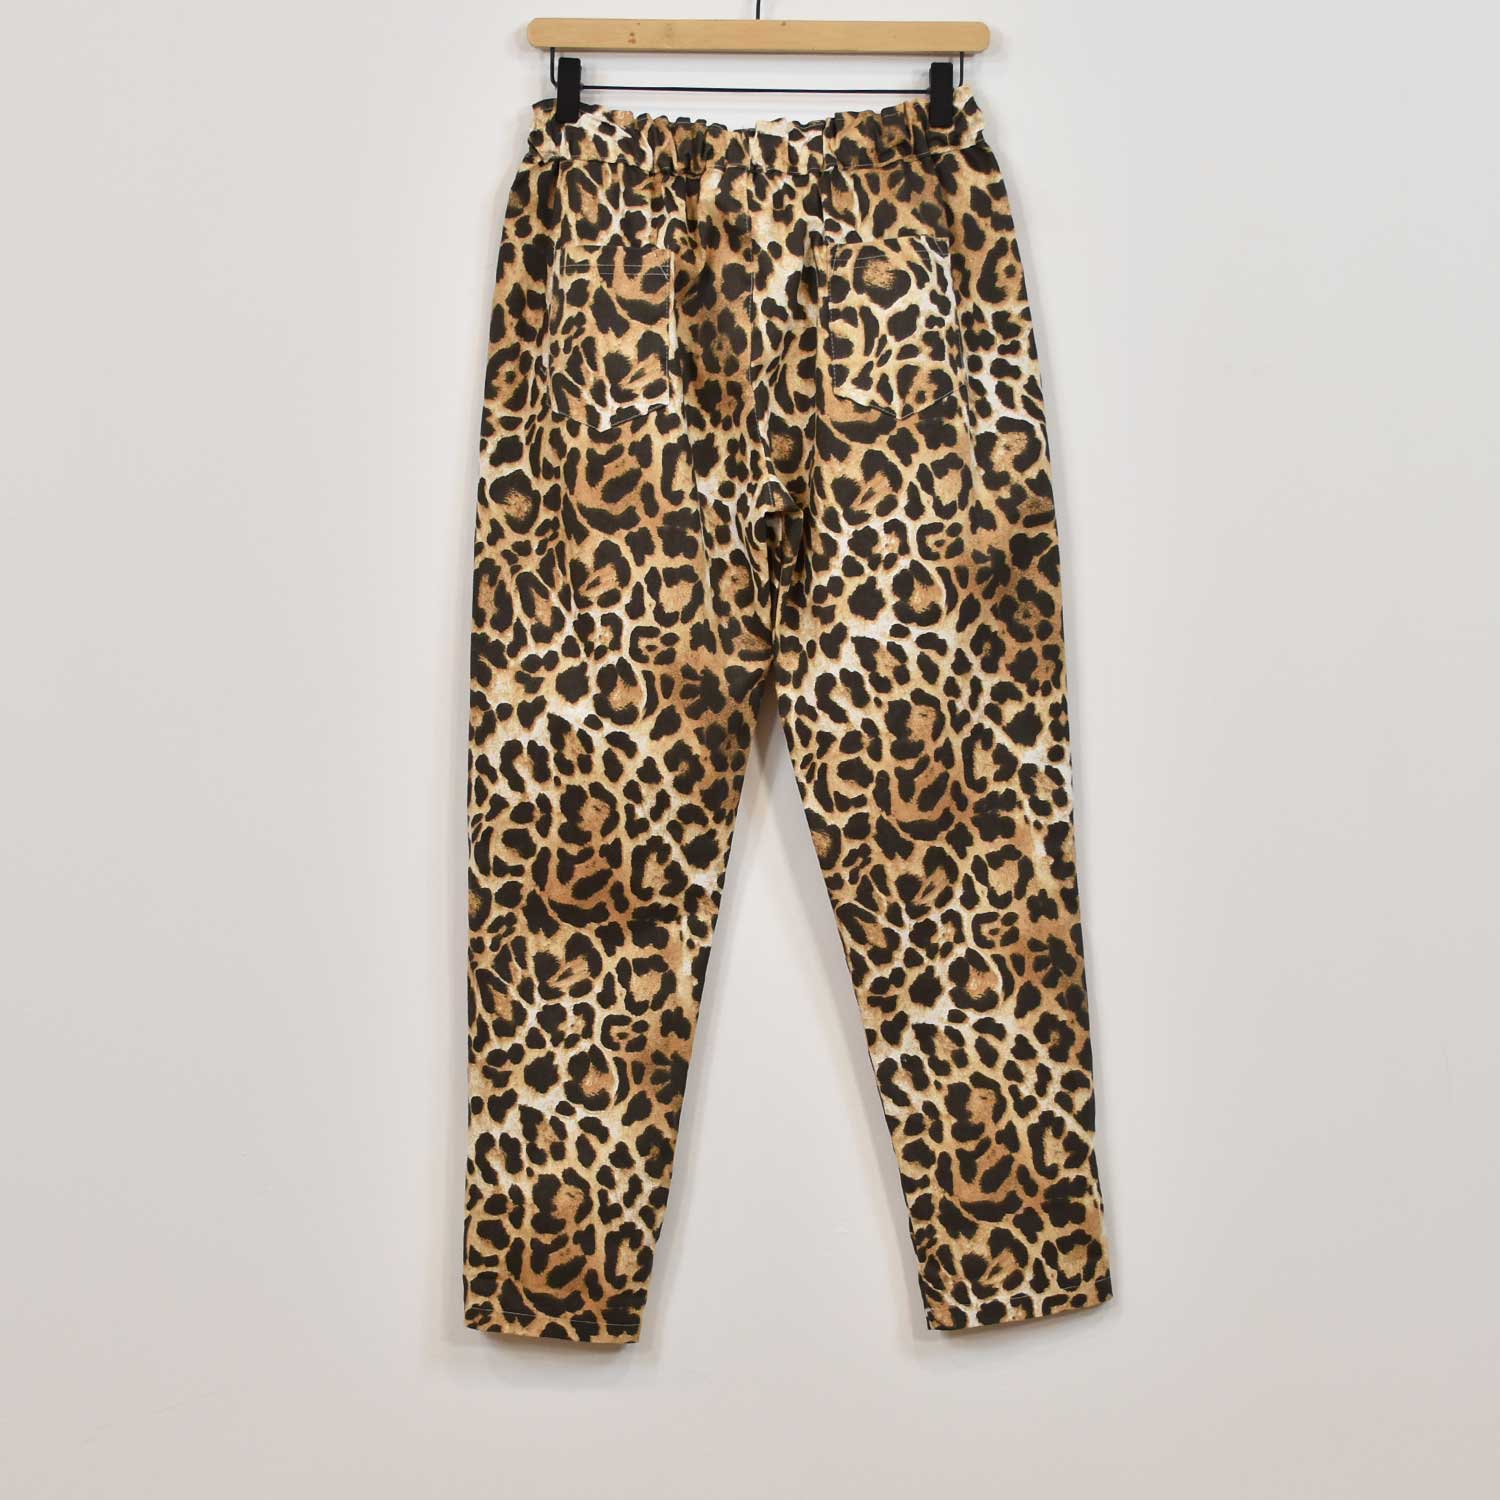 Beige leopard jogger pants